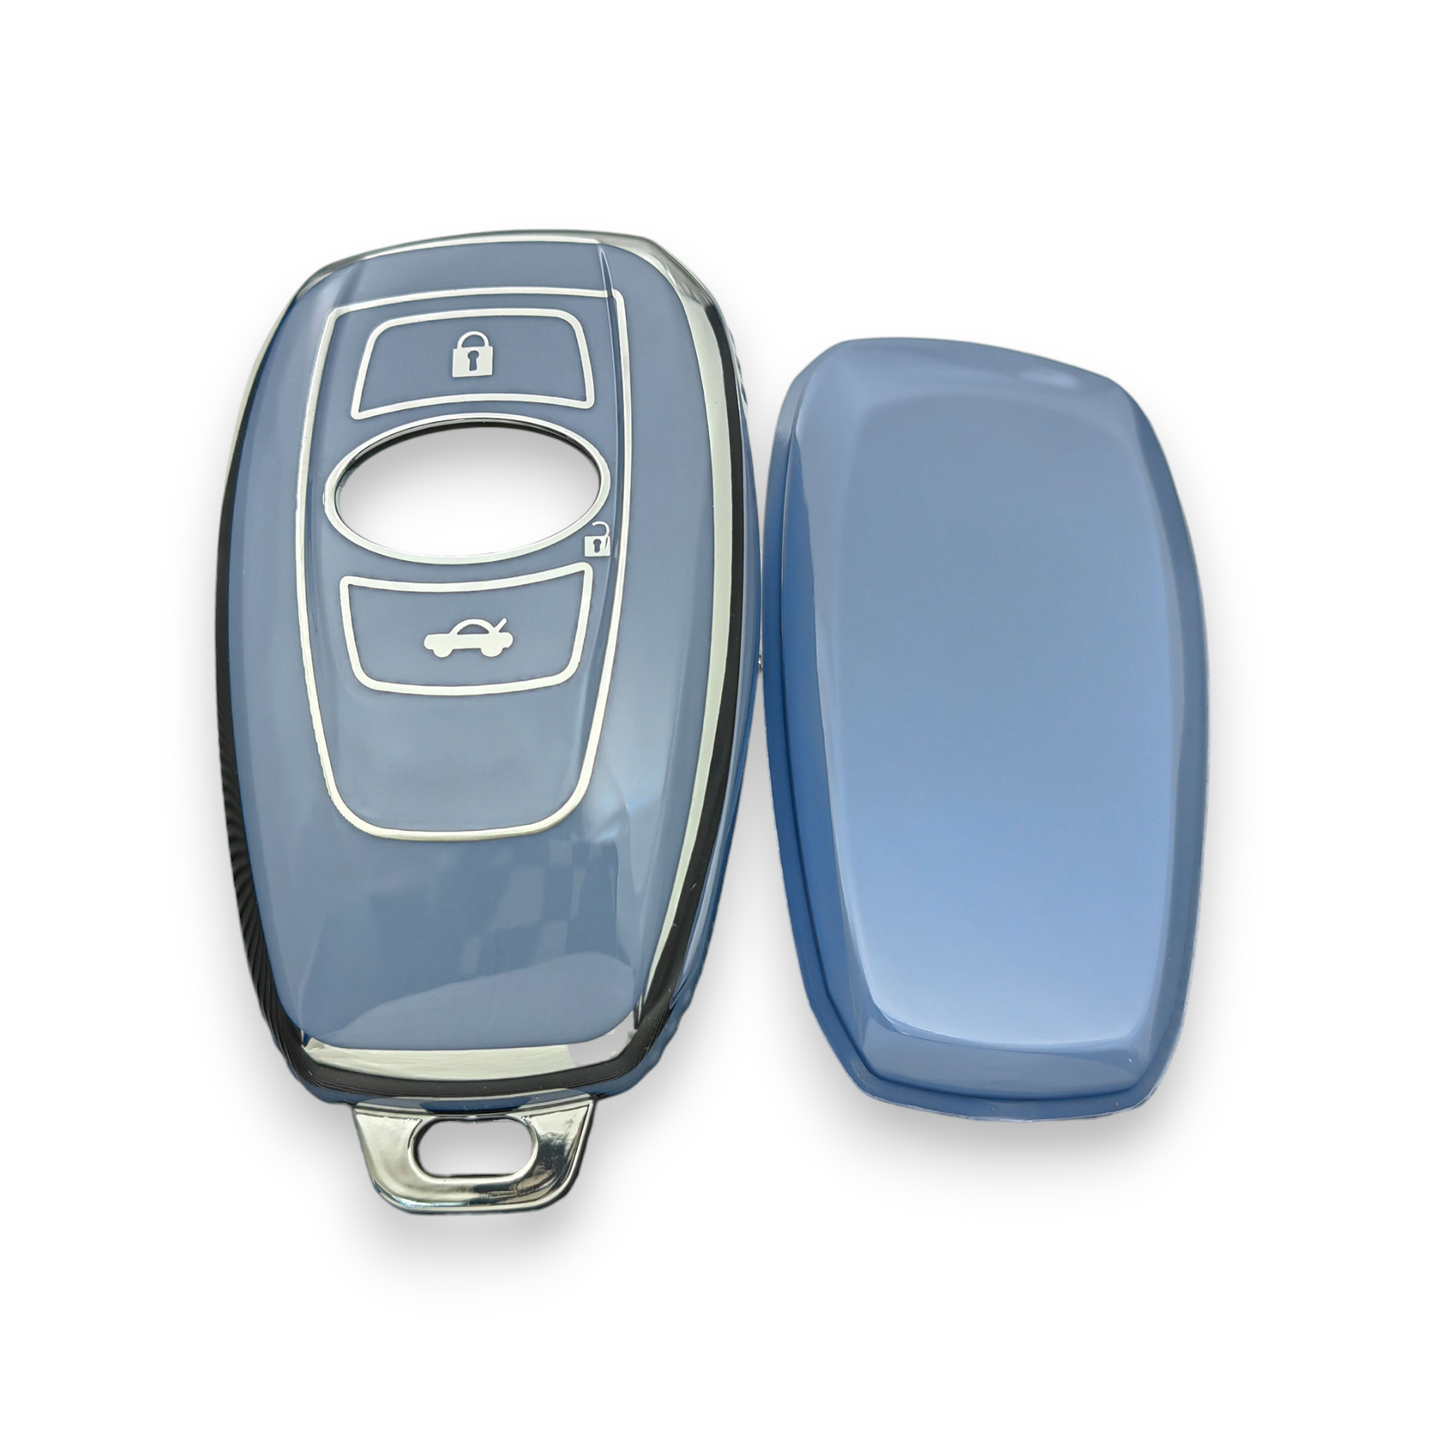 Subaru Key Cover - 3 button | Impreza WRX STI, XV, Forester car key case | Subaru Accessories